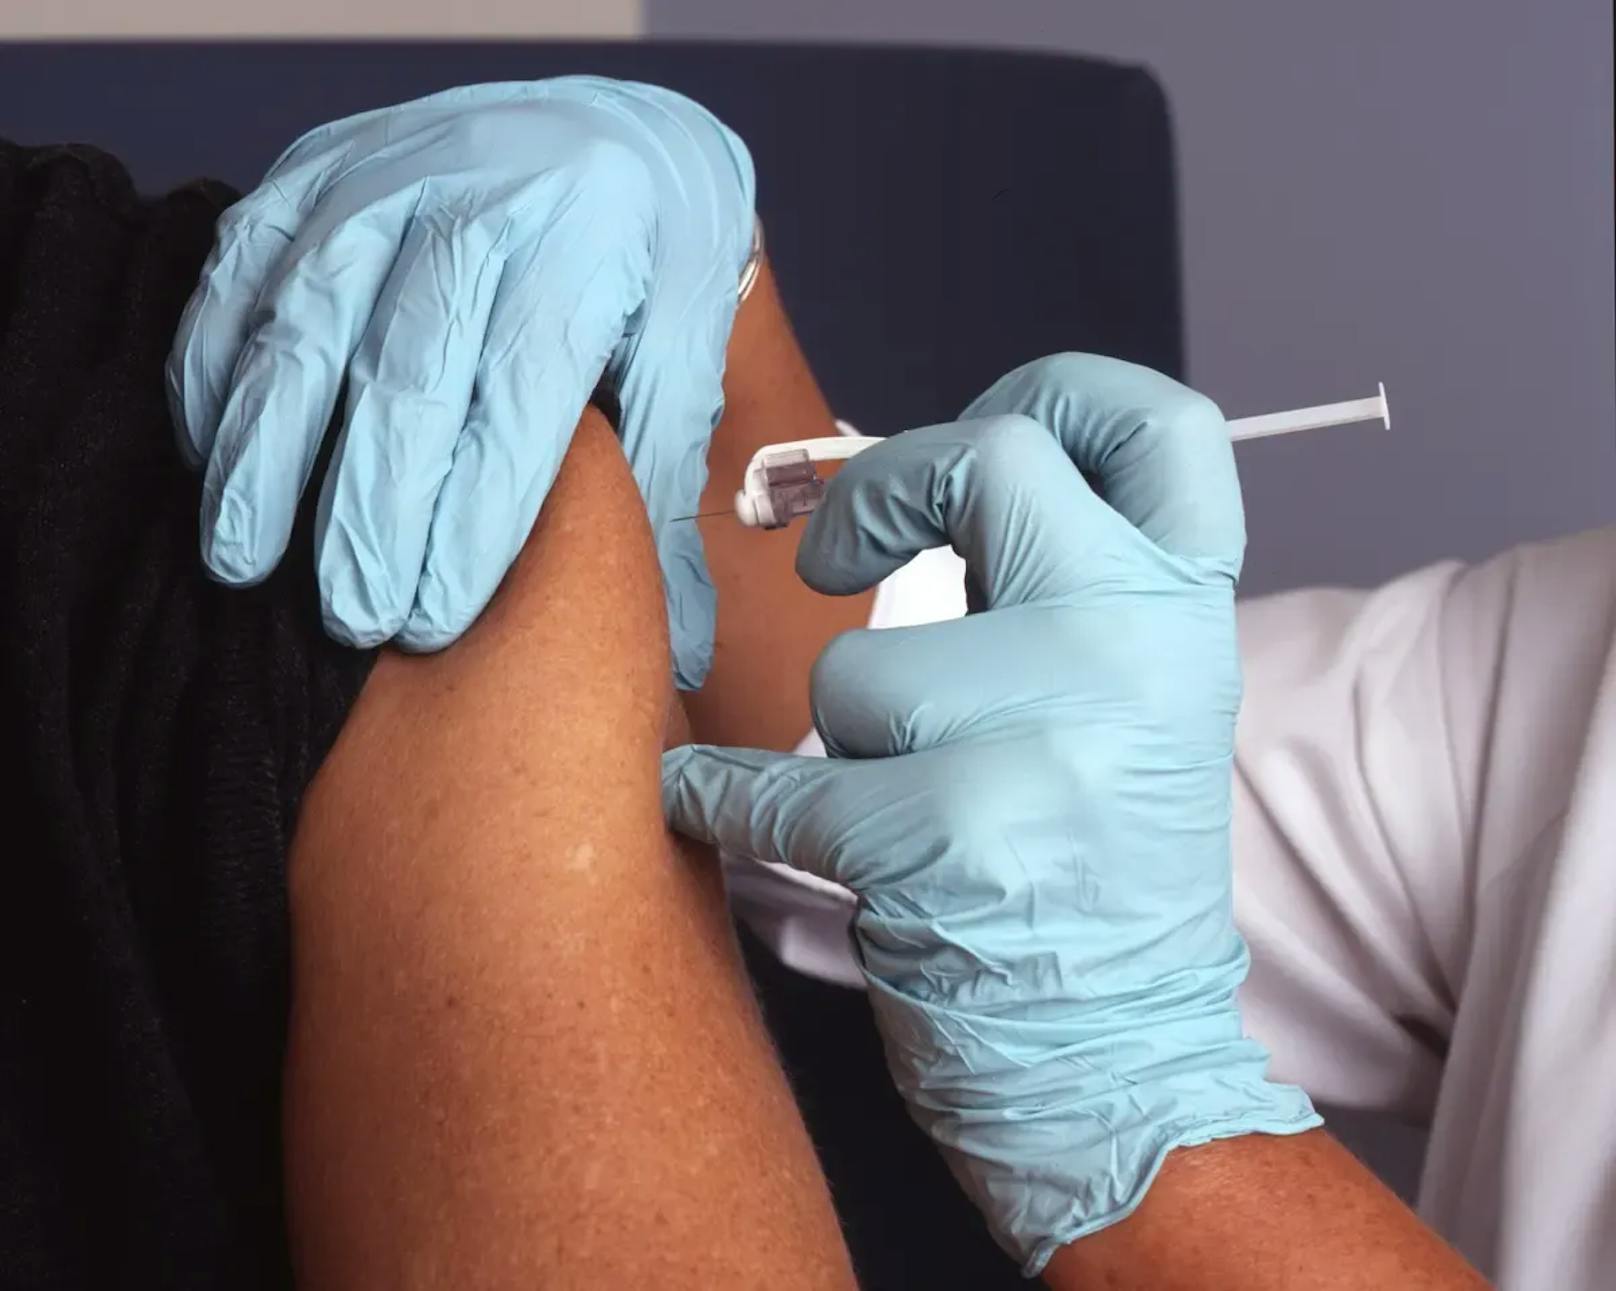 Laut Hisham Mehanna könnte die HPV-Impfung den Negativ-Trend wieder umkehren: "Es gibt zunehmende, wenn auch noch indirekte Beweise dafür, dass die Impfung auch bei der Vorbeugung einer HPV-Infektion im Mund wirksam sein kann."